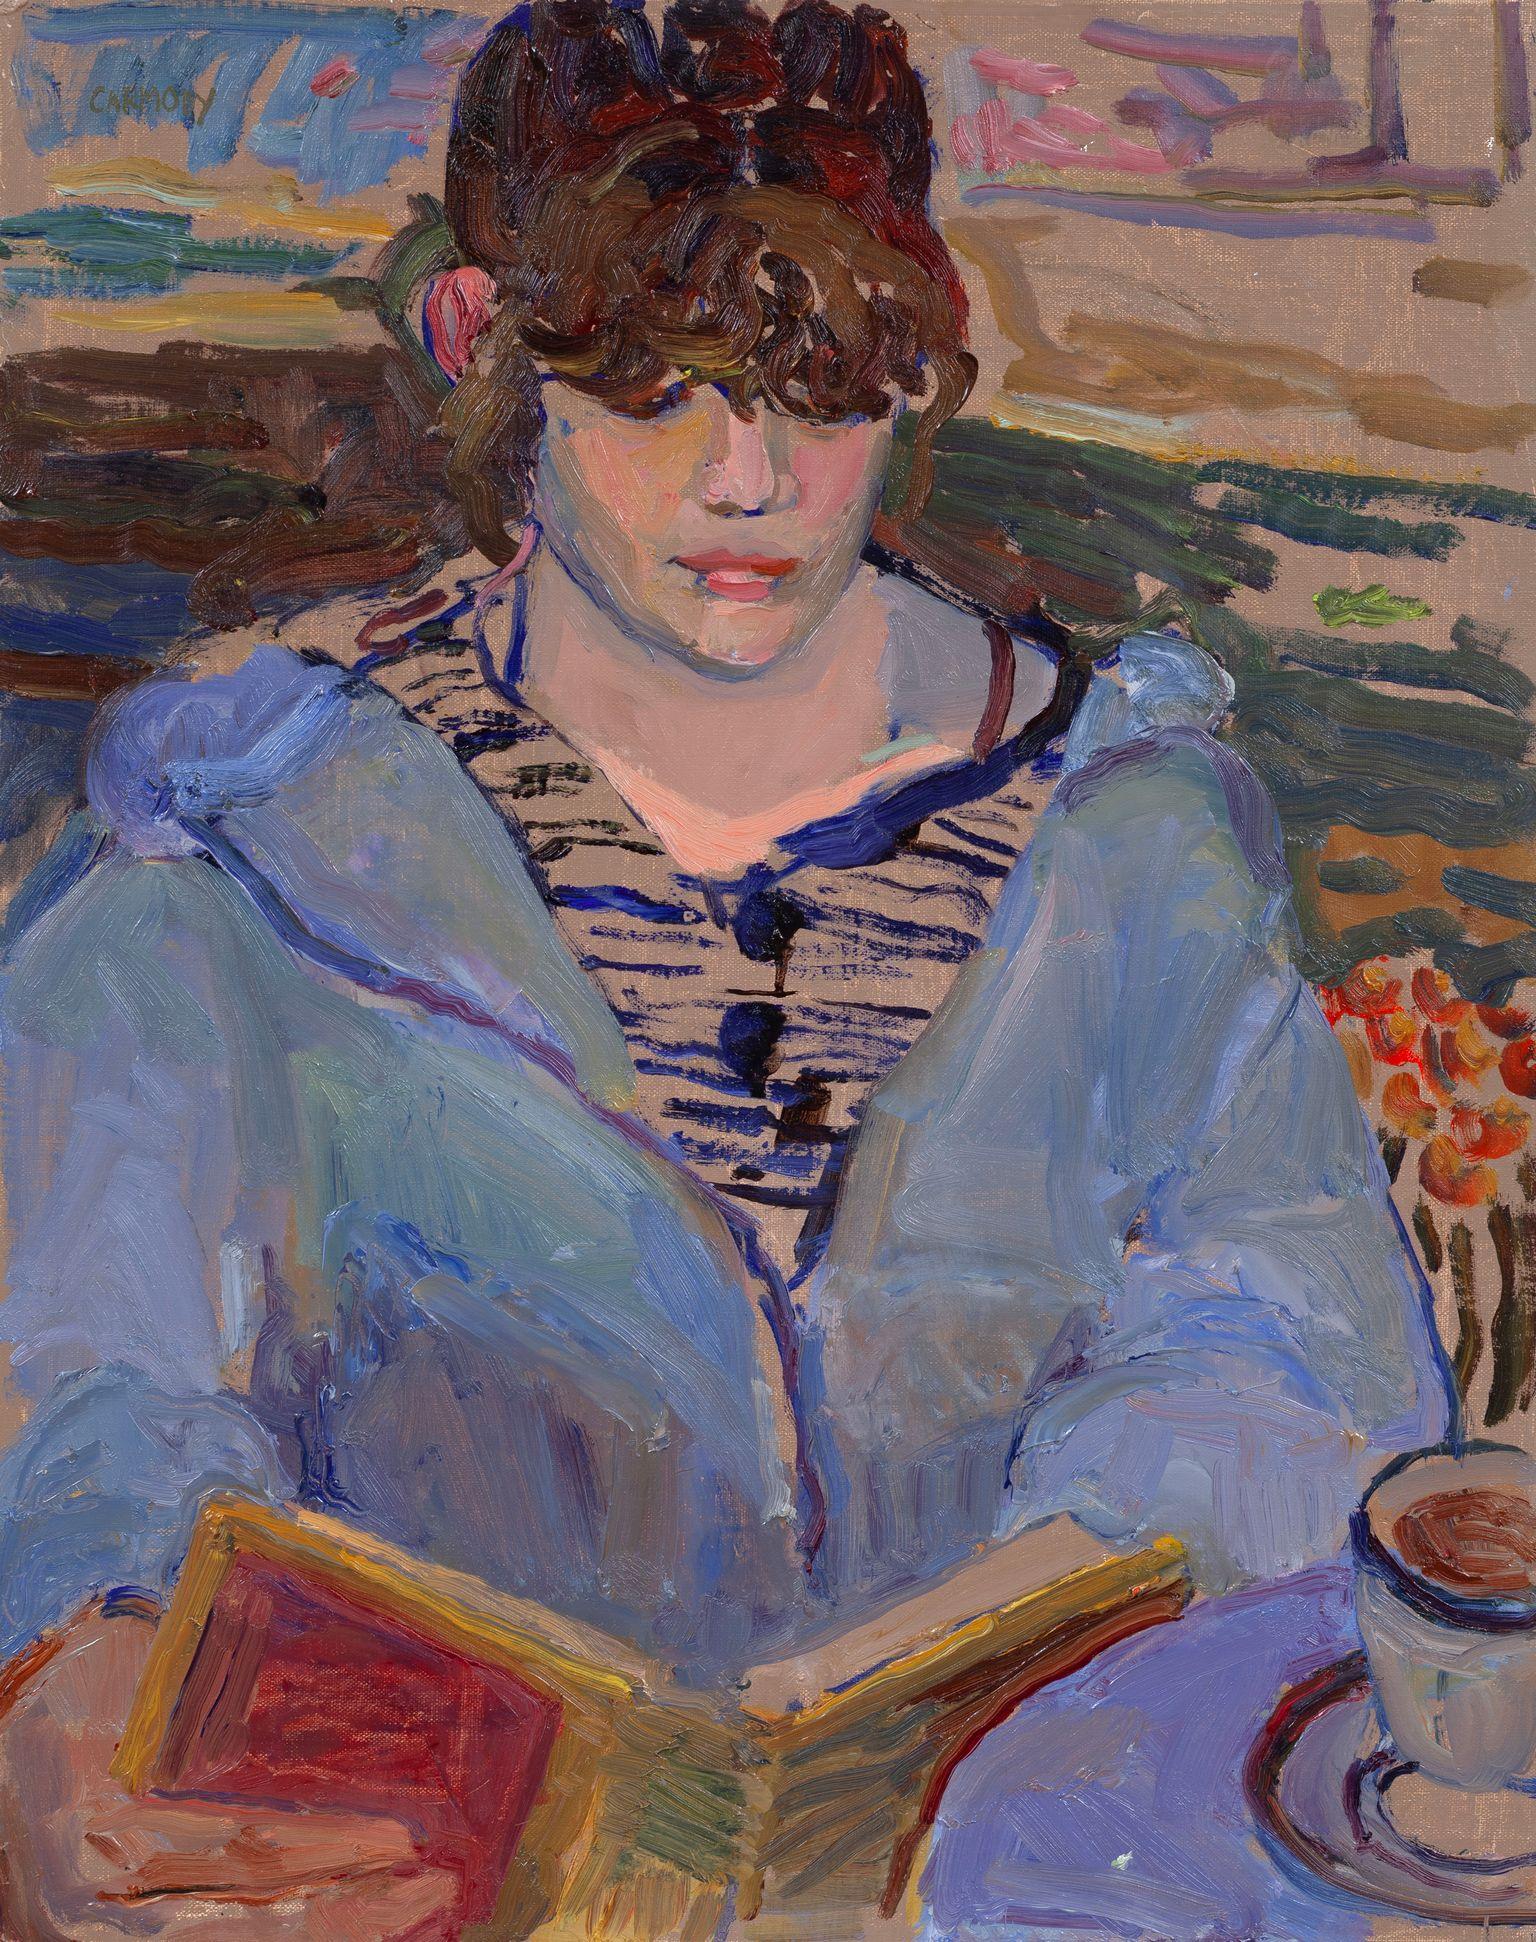 Portrait Painting Kelly Carmody - "Lecture" peinture à l'huile contemporaine d'une femme avec un livre, peinture stylisée.